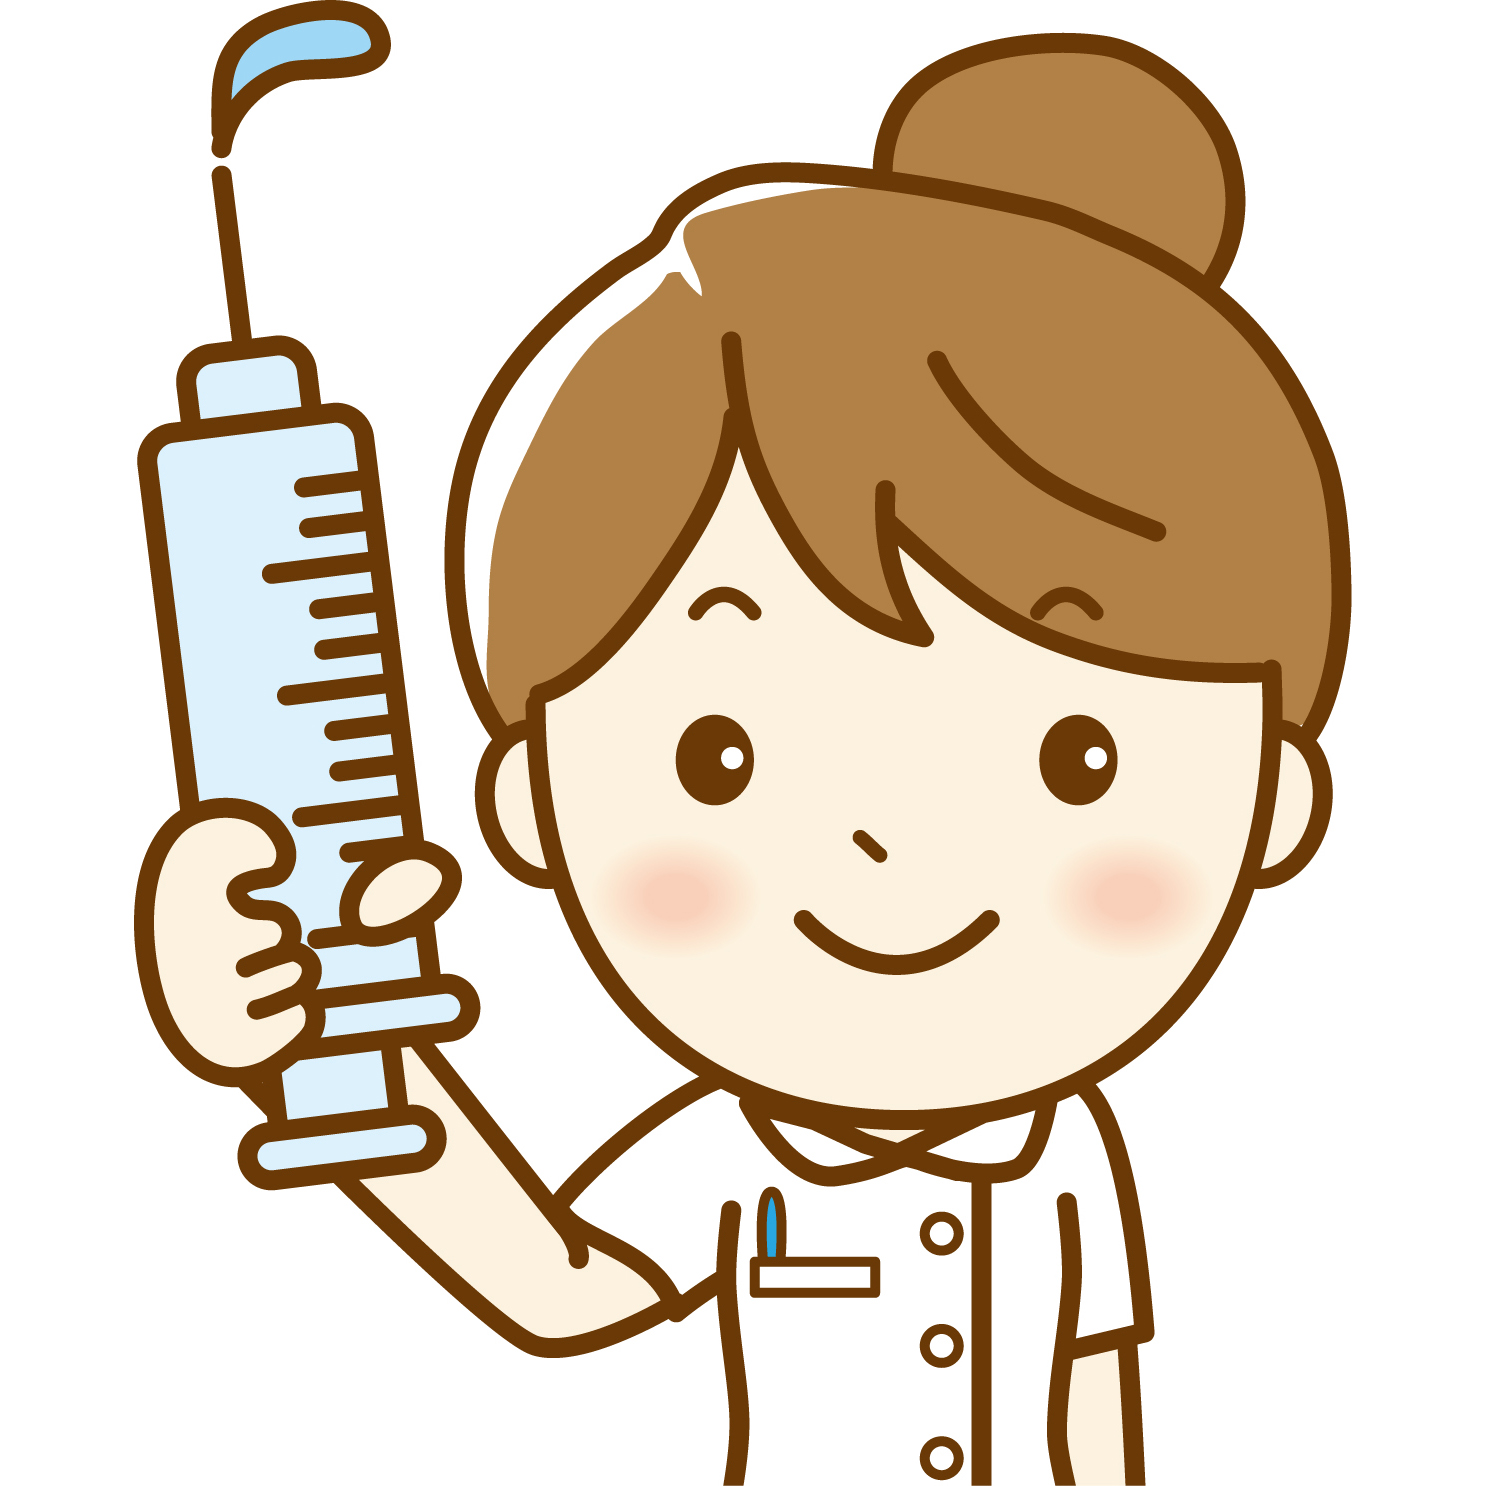 串本町子どもインフルエンザ予防接種費用助成事業の説明